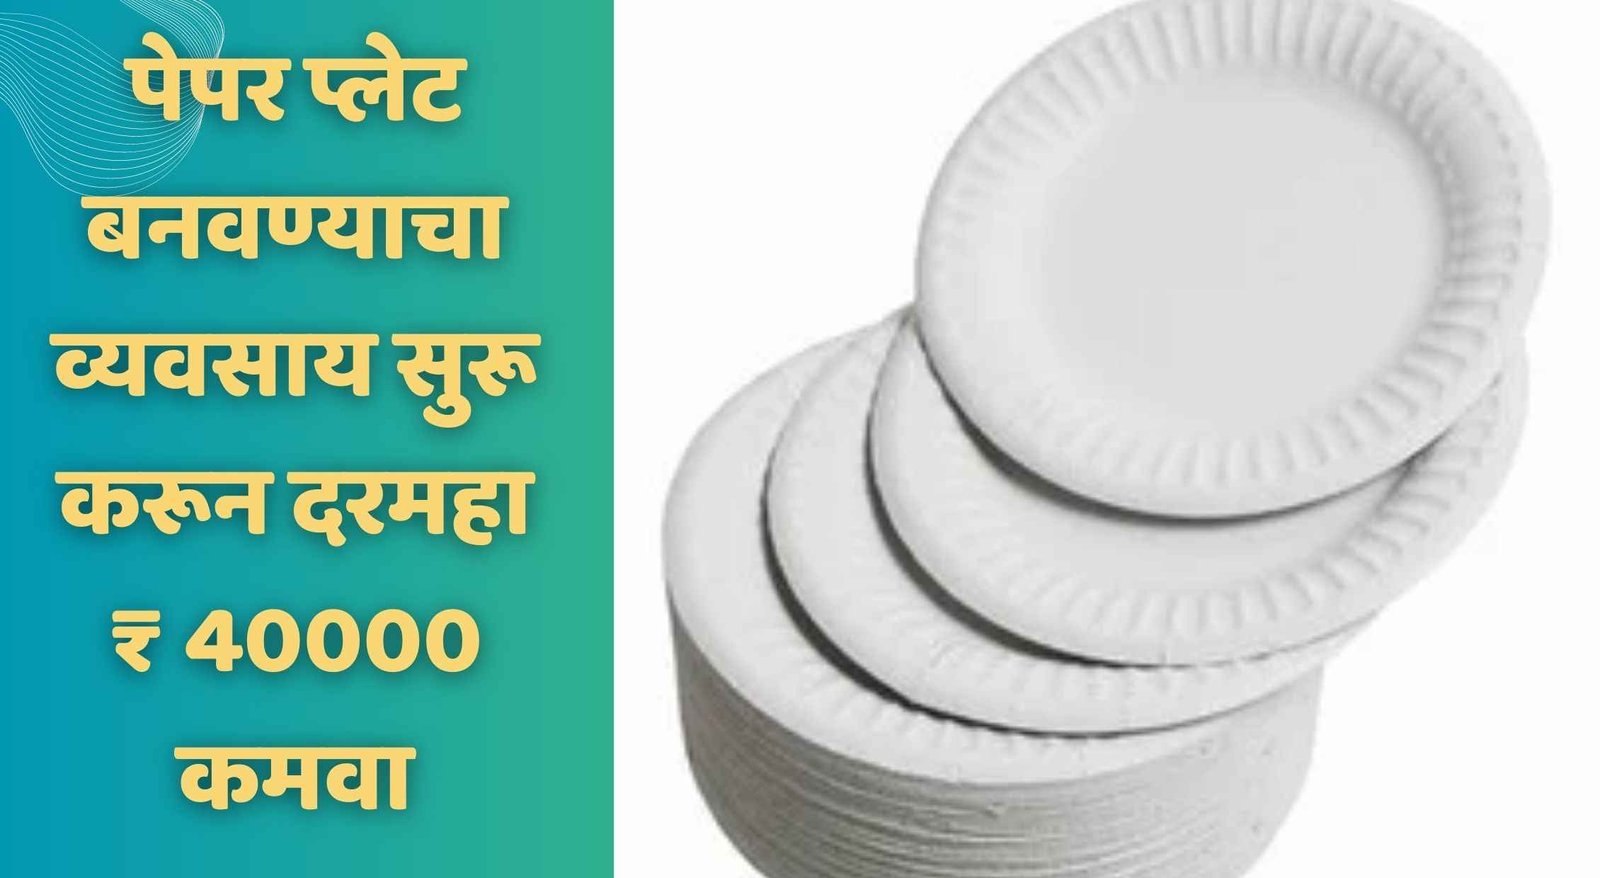 पेपर प्लेट बनवण्याचा व्यवसाय सुरू करून दरमहा ₹ 40000 कमवा | Paper Plate Making Business In Marathi